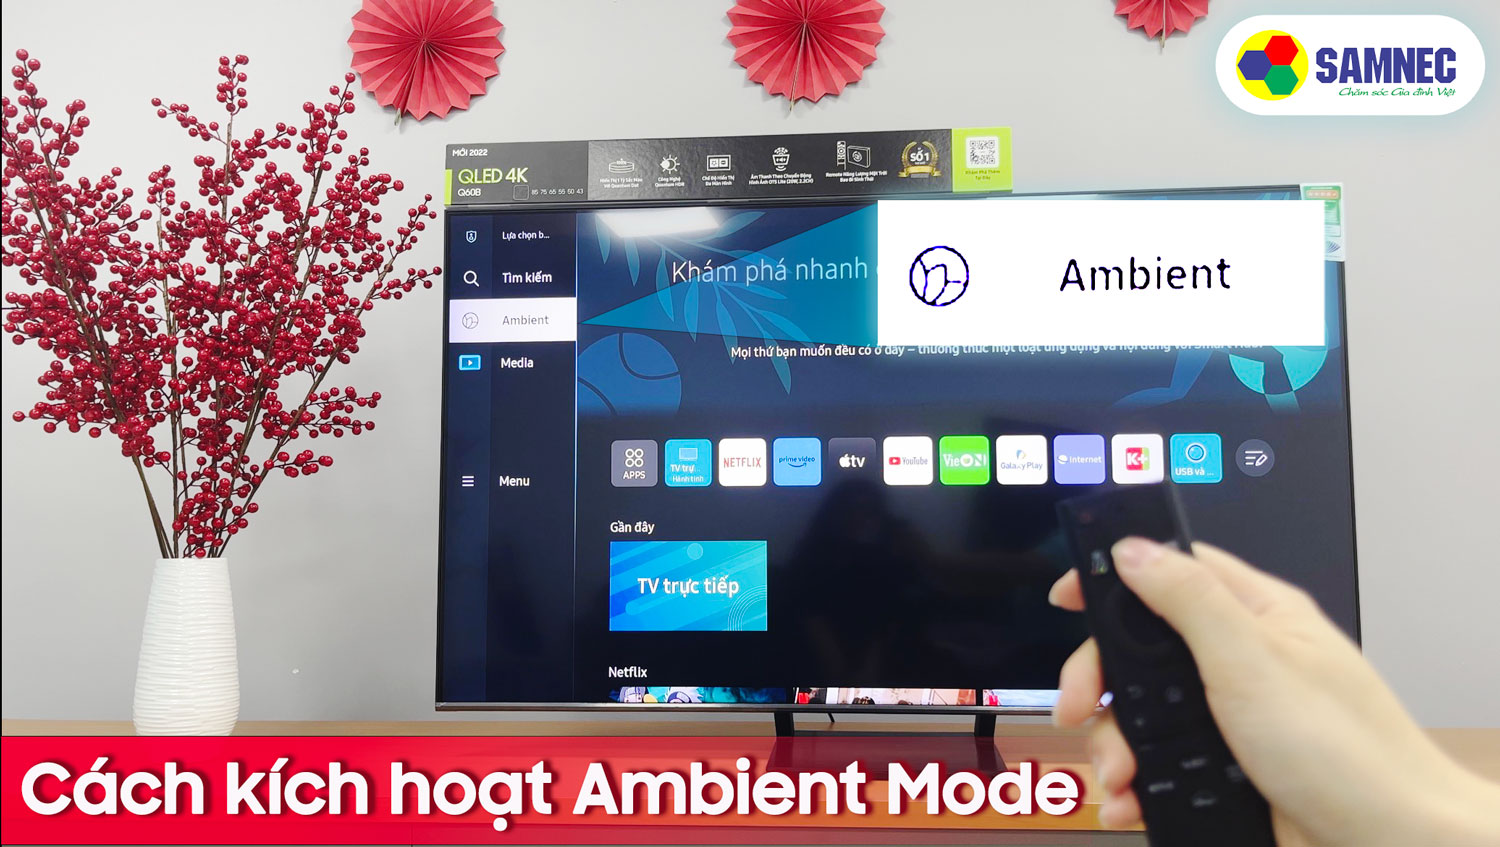 Ambient Mode, Smart tivi Samsung: Thăng hoa khả năng trang trí của bạn với Ambient Mode của Smart tivi Samsung! Hồi sinh không gian sống và biến nó thành một tác phẩm nghệ thuật với hình ảnh sống động hoặc hình nền ưa thích của bạn. Nó còn là một trợ thủ đắc lực để làm mới căn phòng của bạn!